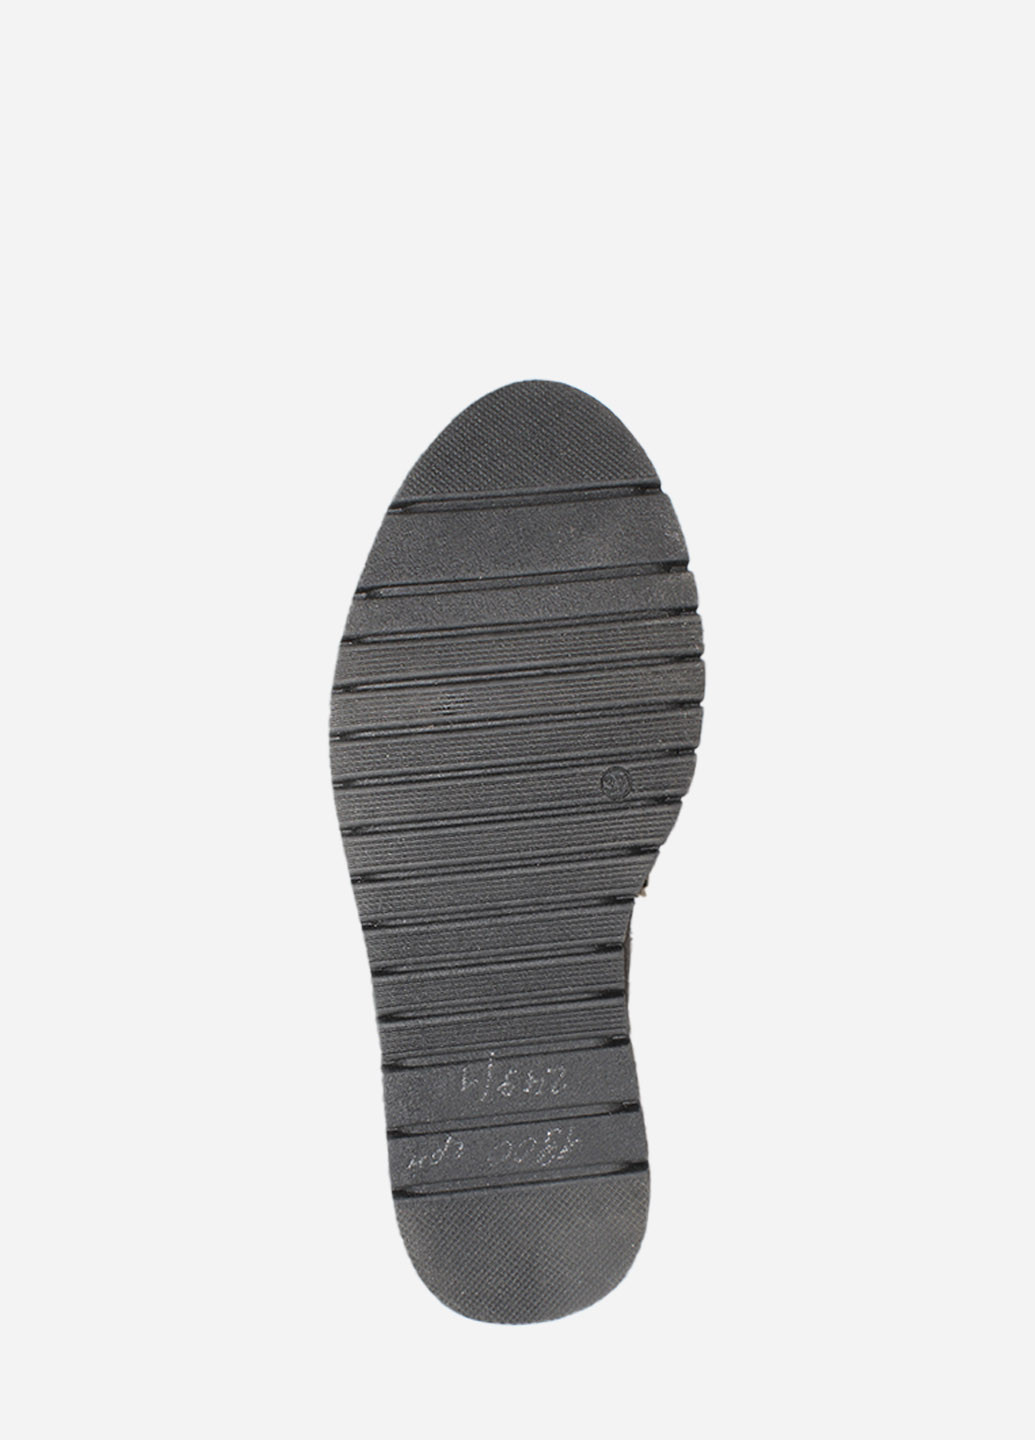 Зимние ботинки p.alina rp249-22 черный Palina